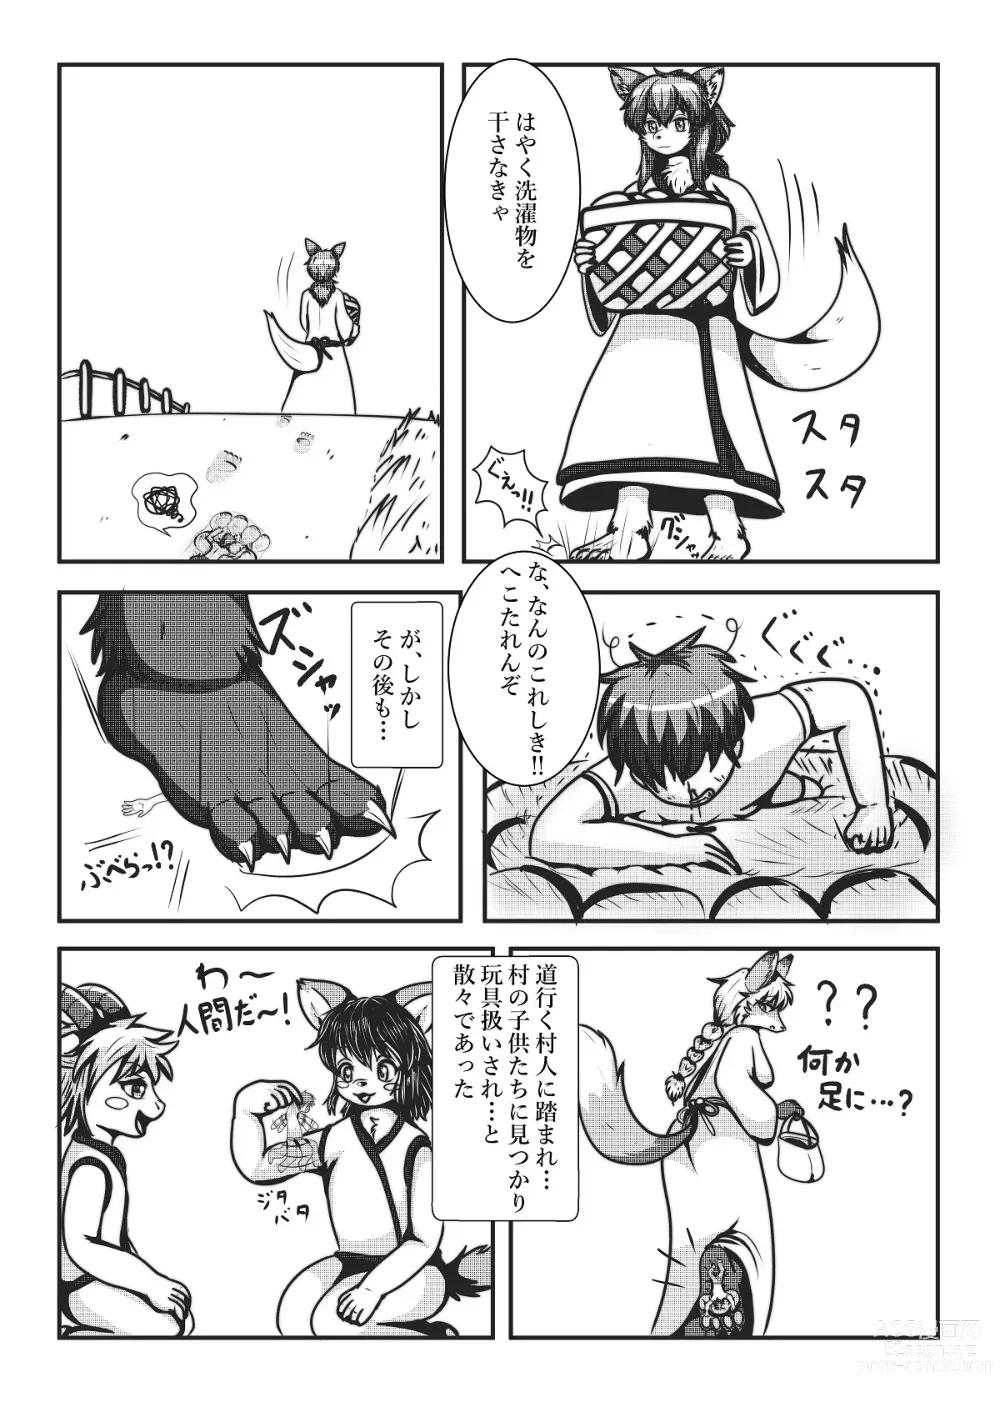 Page 10 of doujinshi Kyoju mura